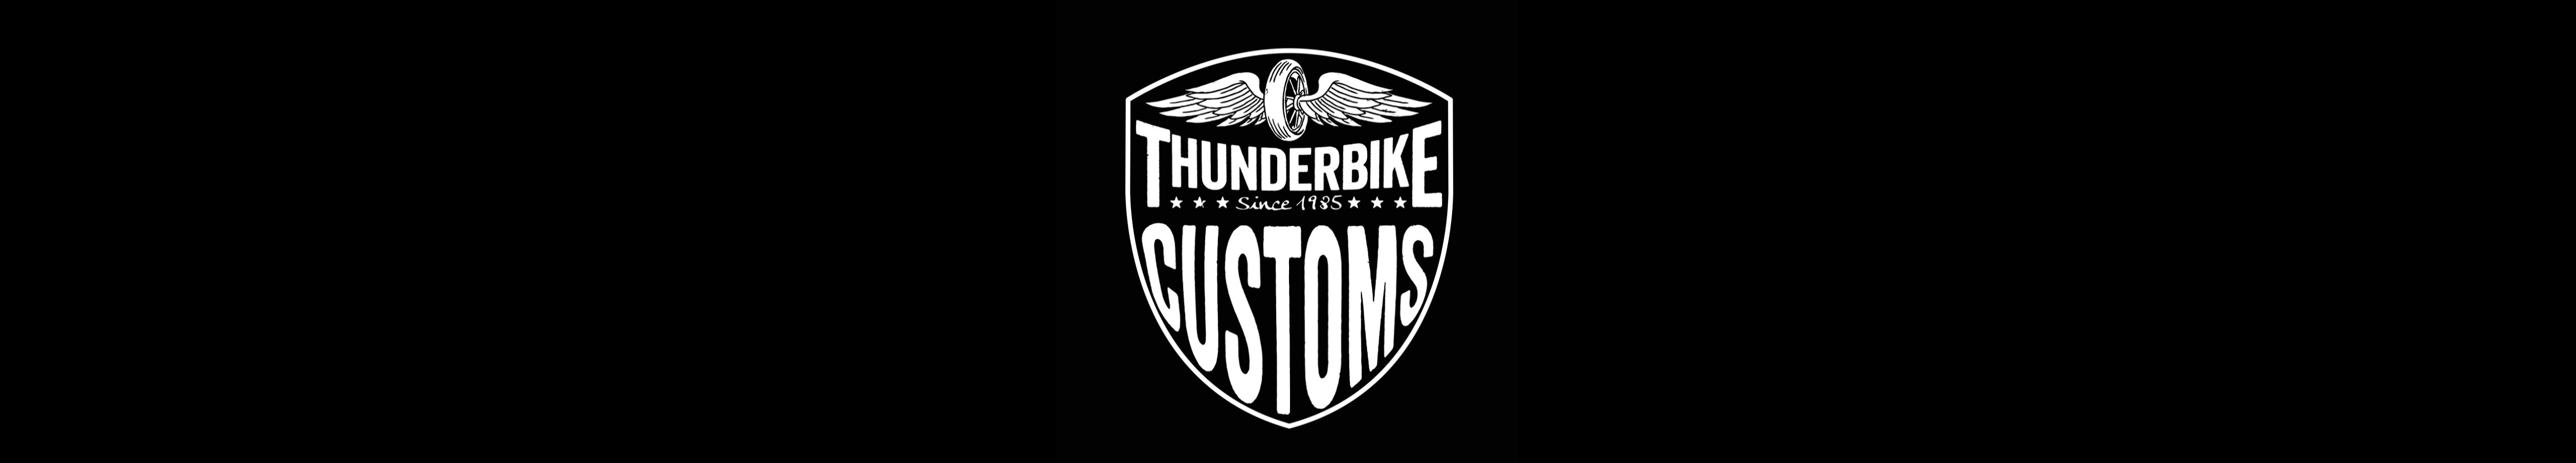 thunderbike_logo_1.jpg